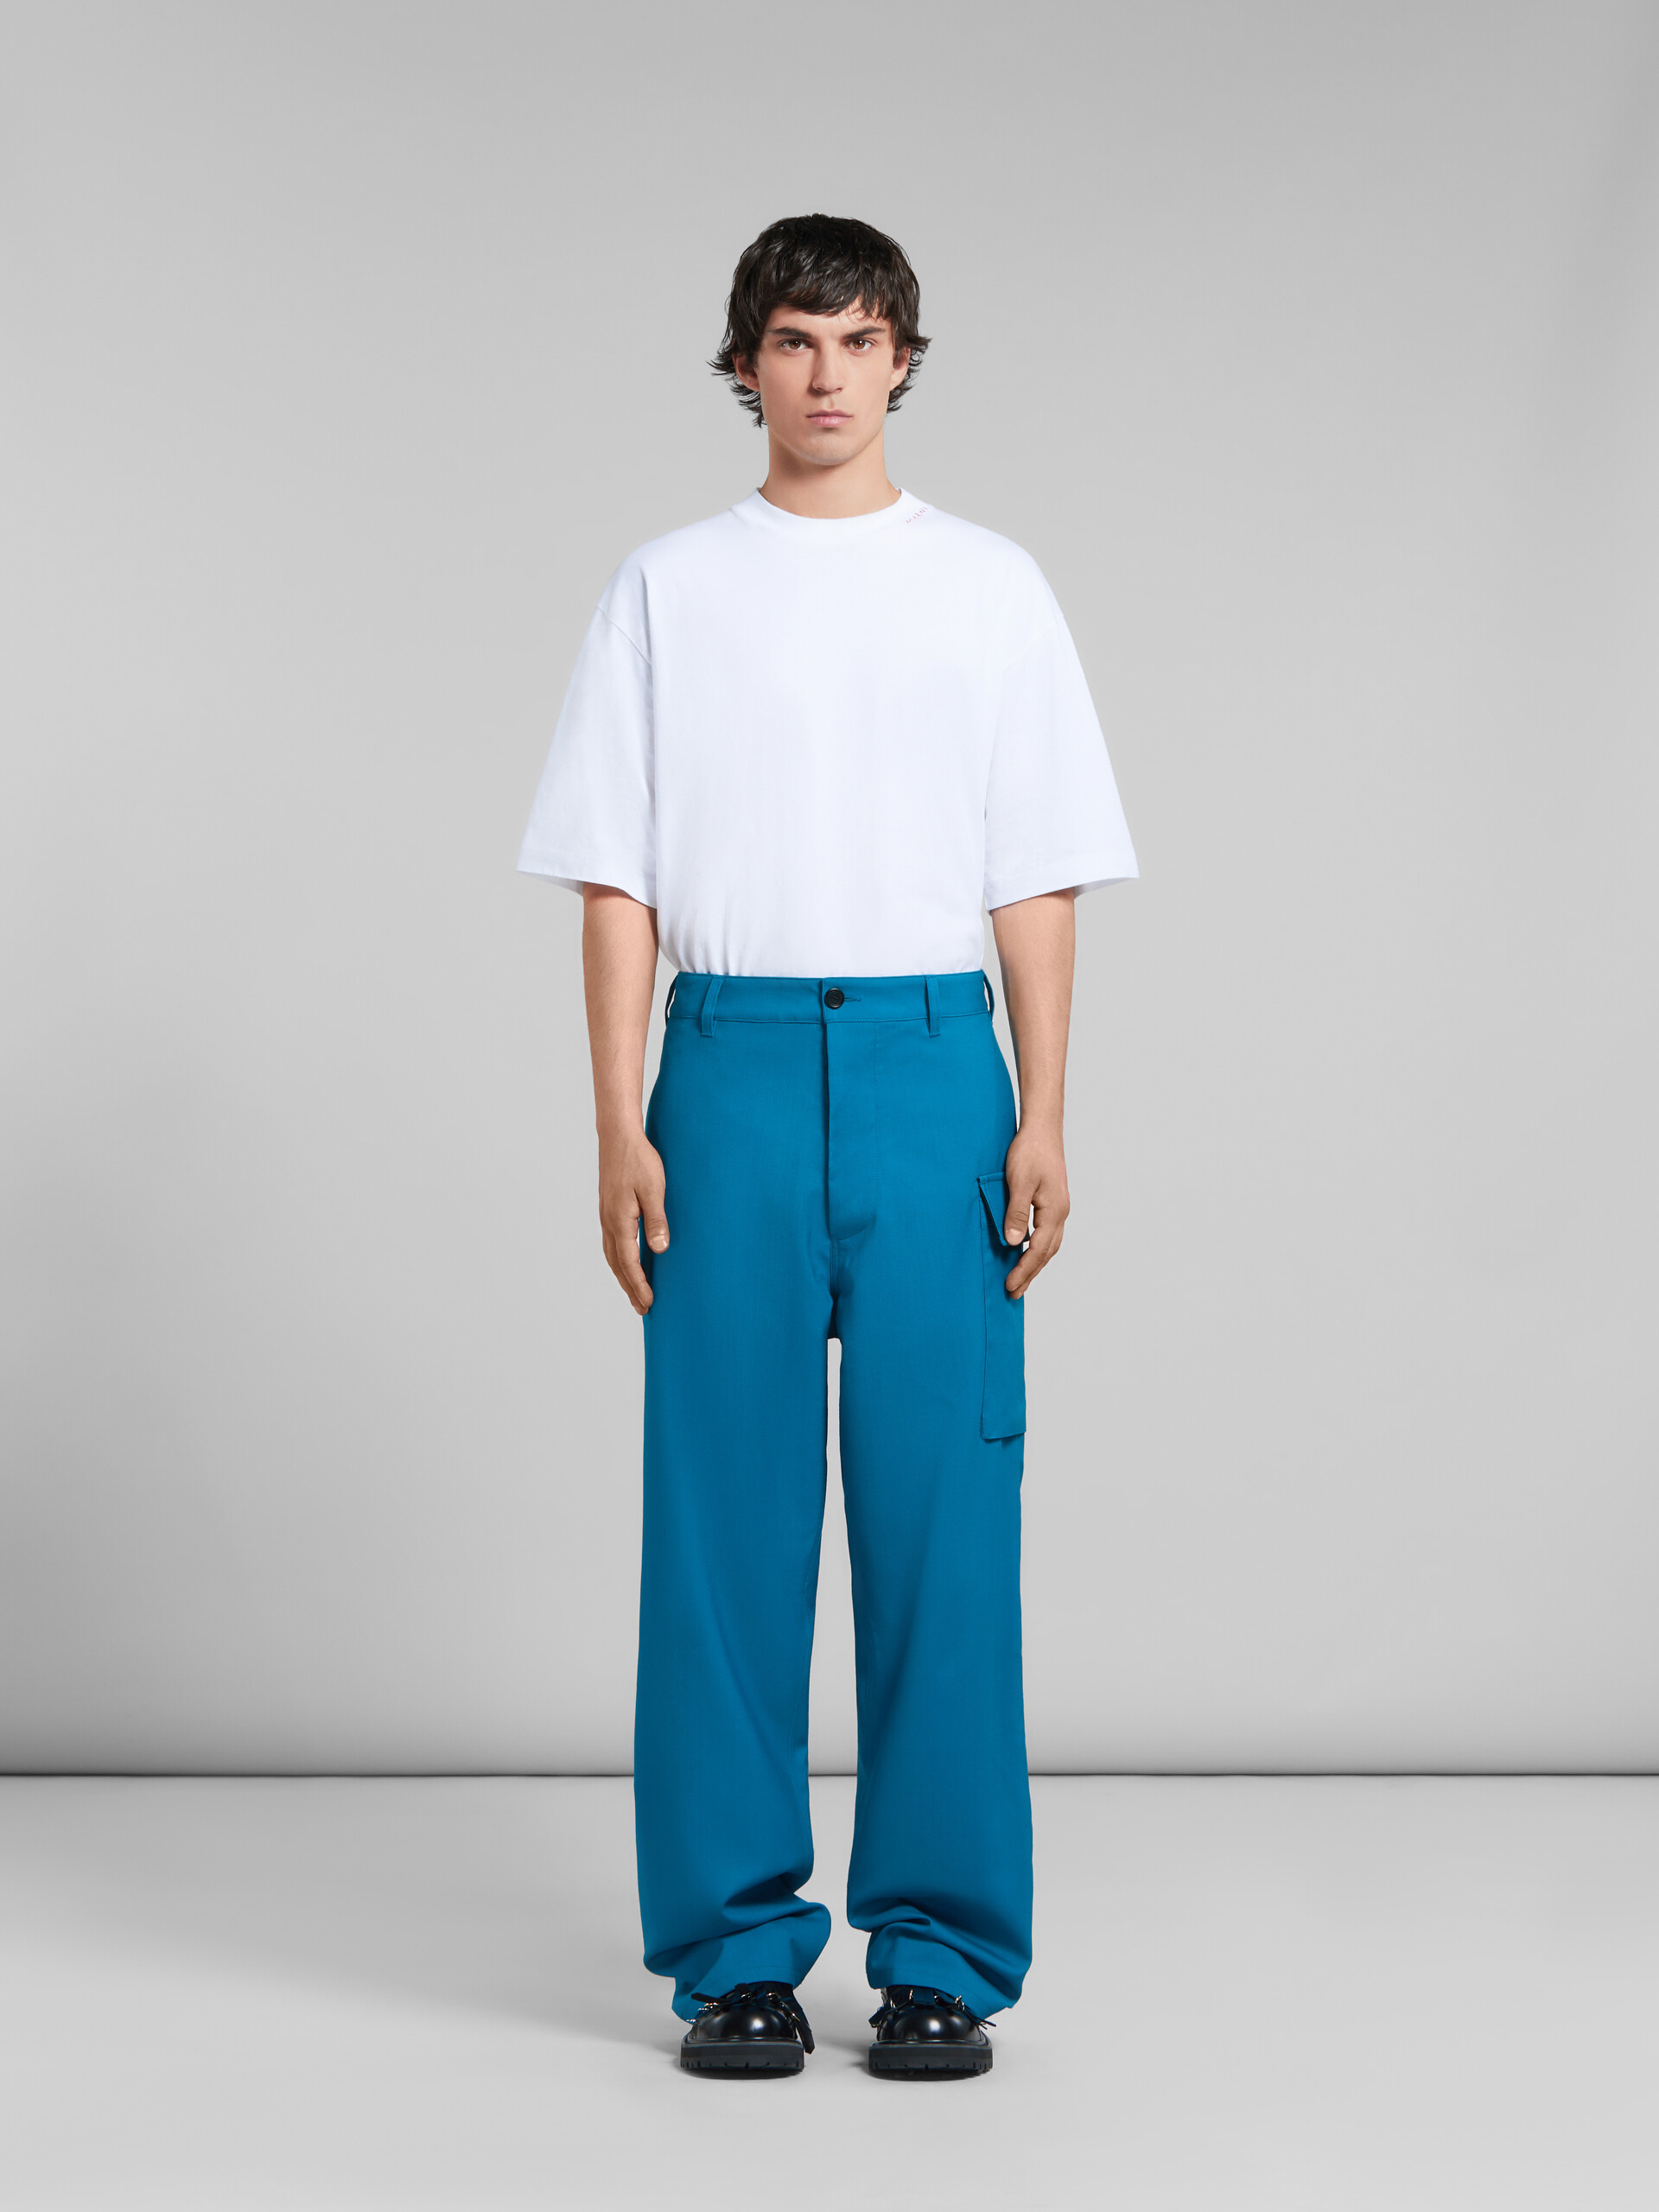 Pantalon en laine tropicale bleu sarcelle avec poche utilitaire - Pantalons - Image 2